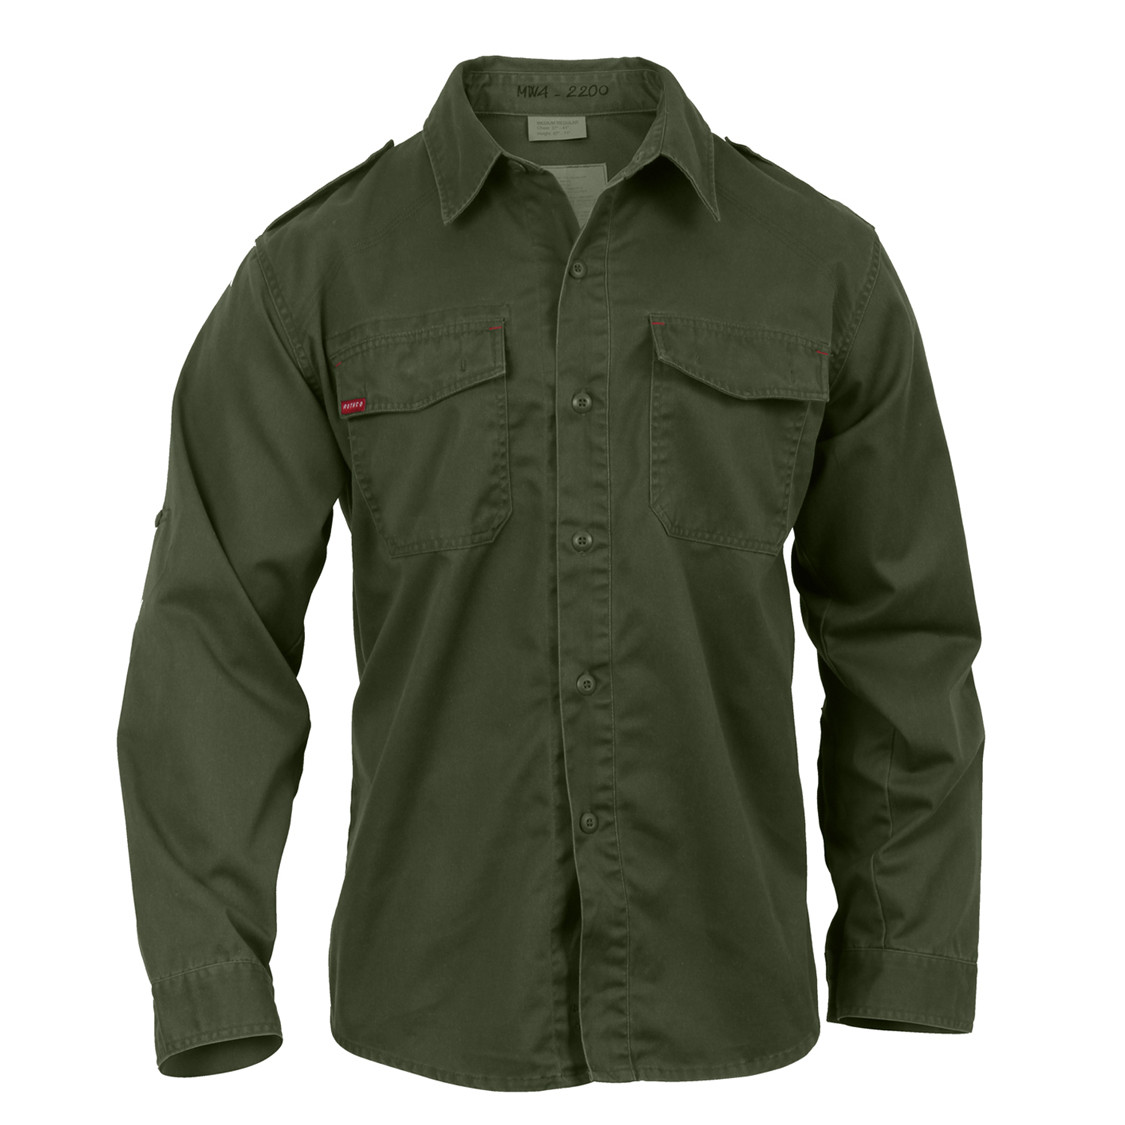 Shop Vintage Fatigue Shirts - Fatigues Army Navy Gear